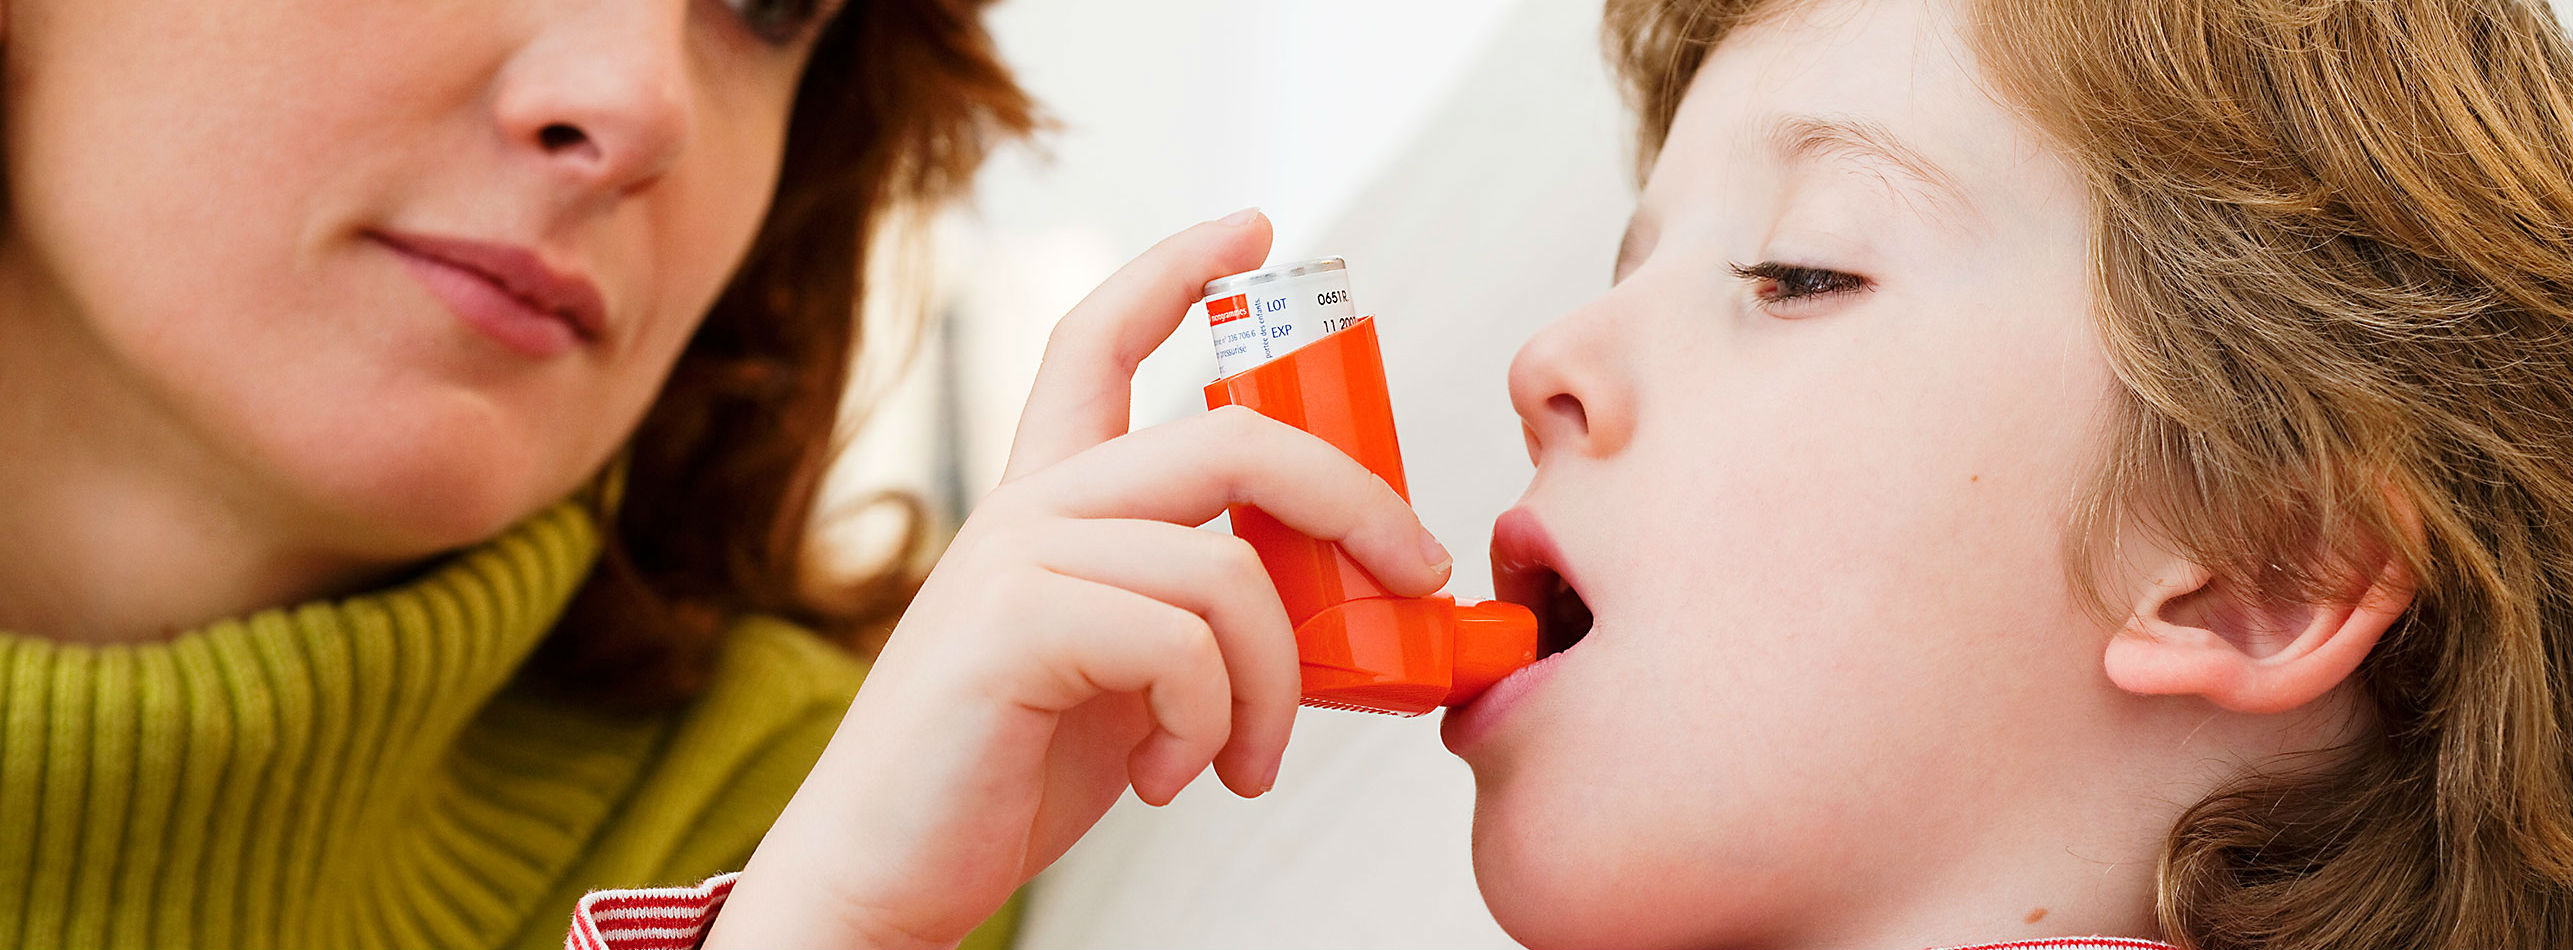 Детская астма - состояние легких